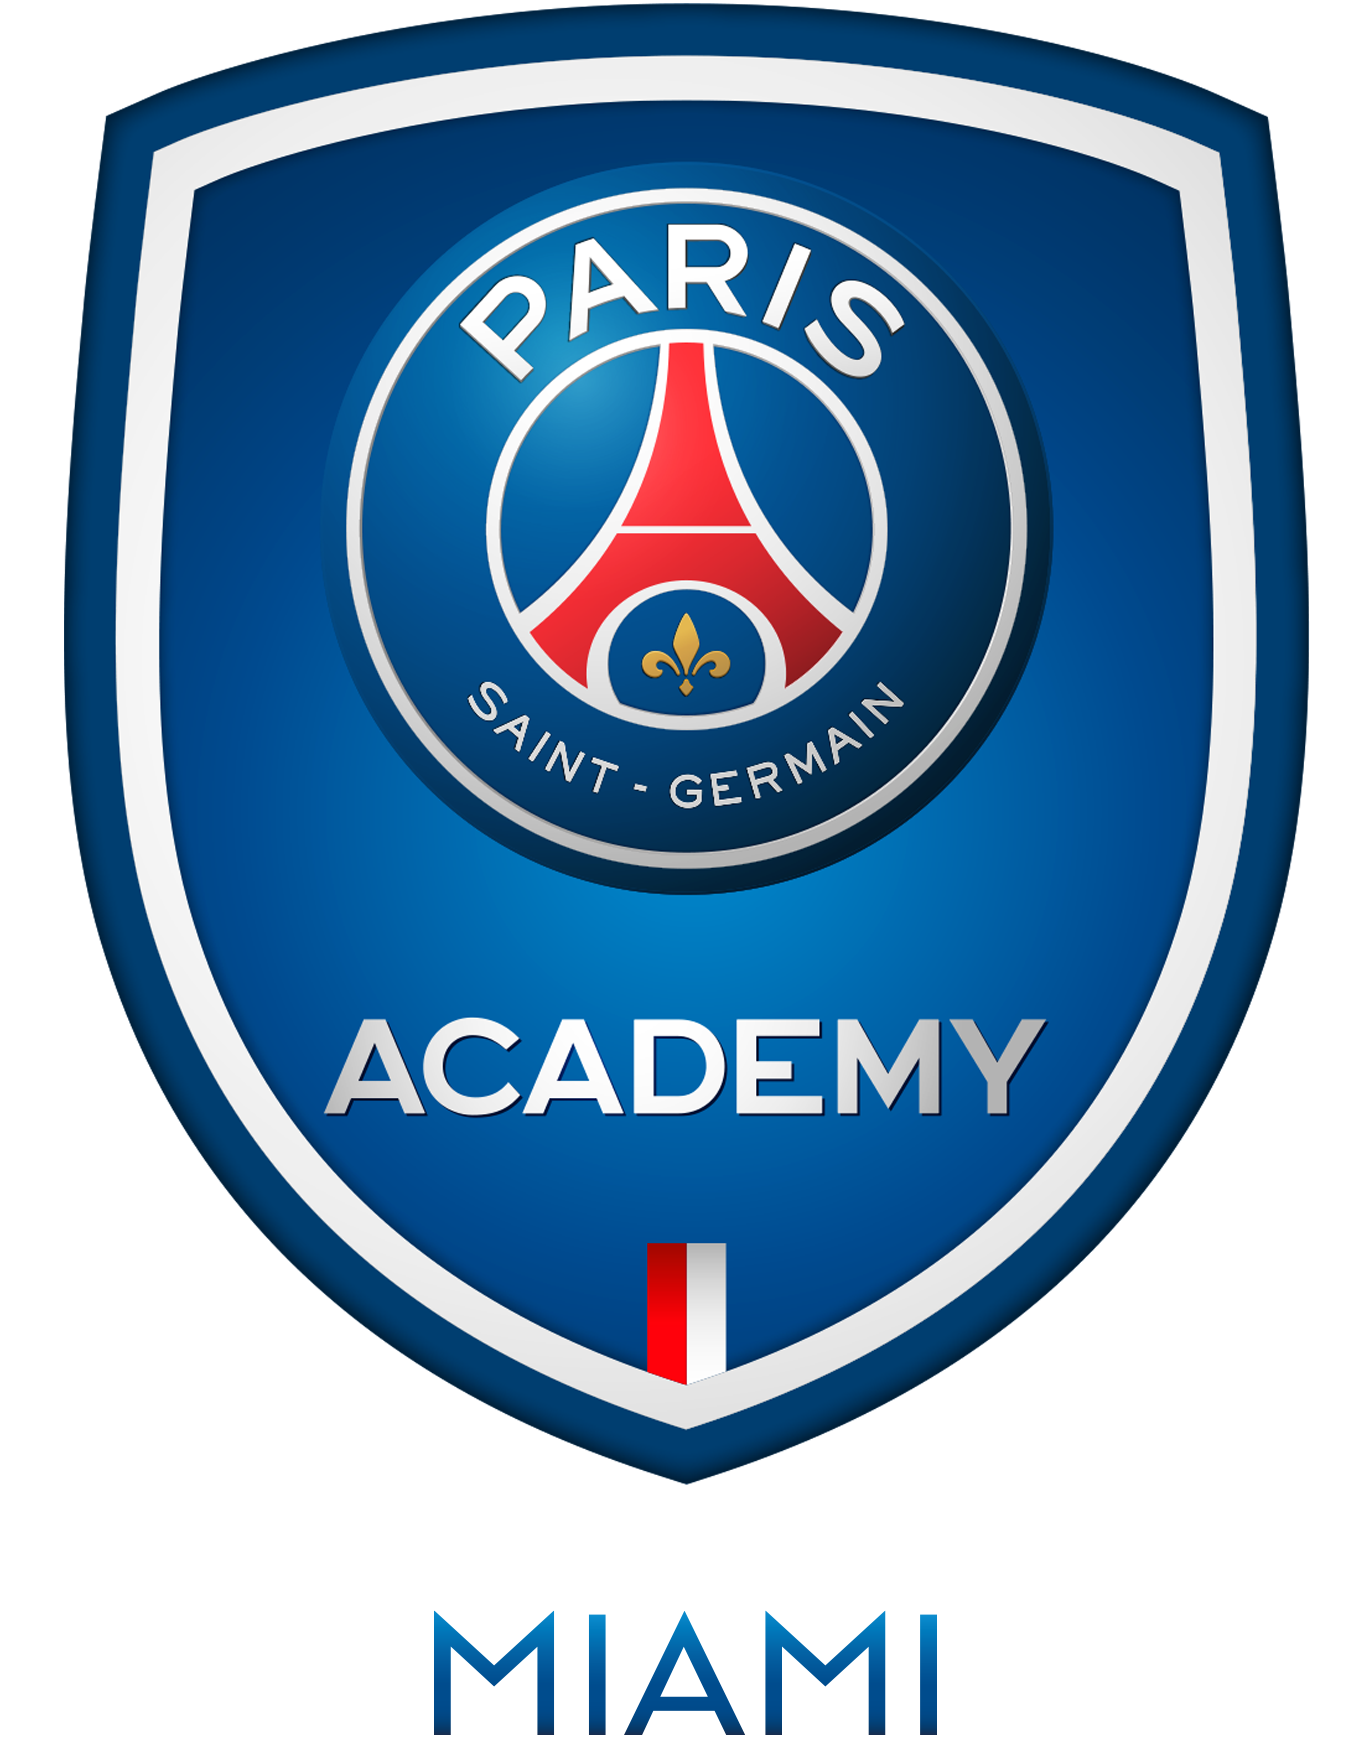 Academia París Saint-Germain Miami Soccer Club